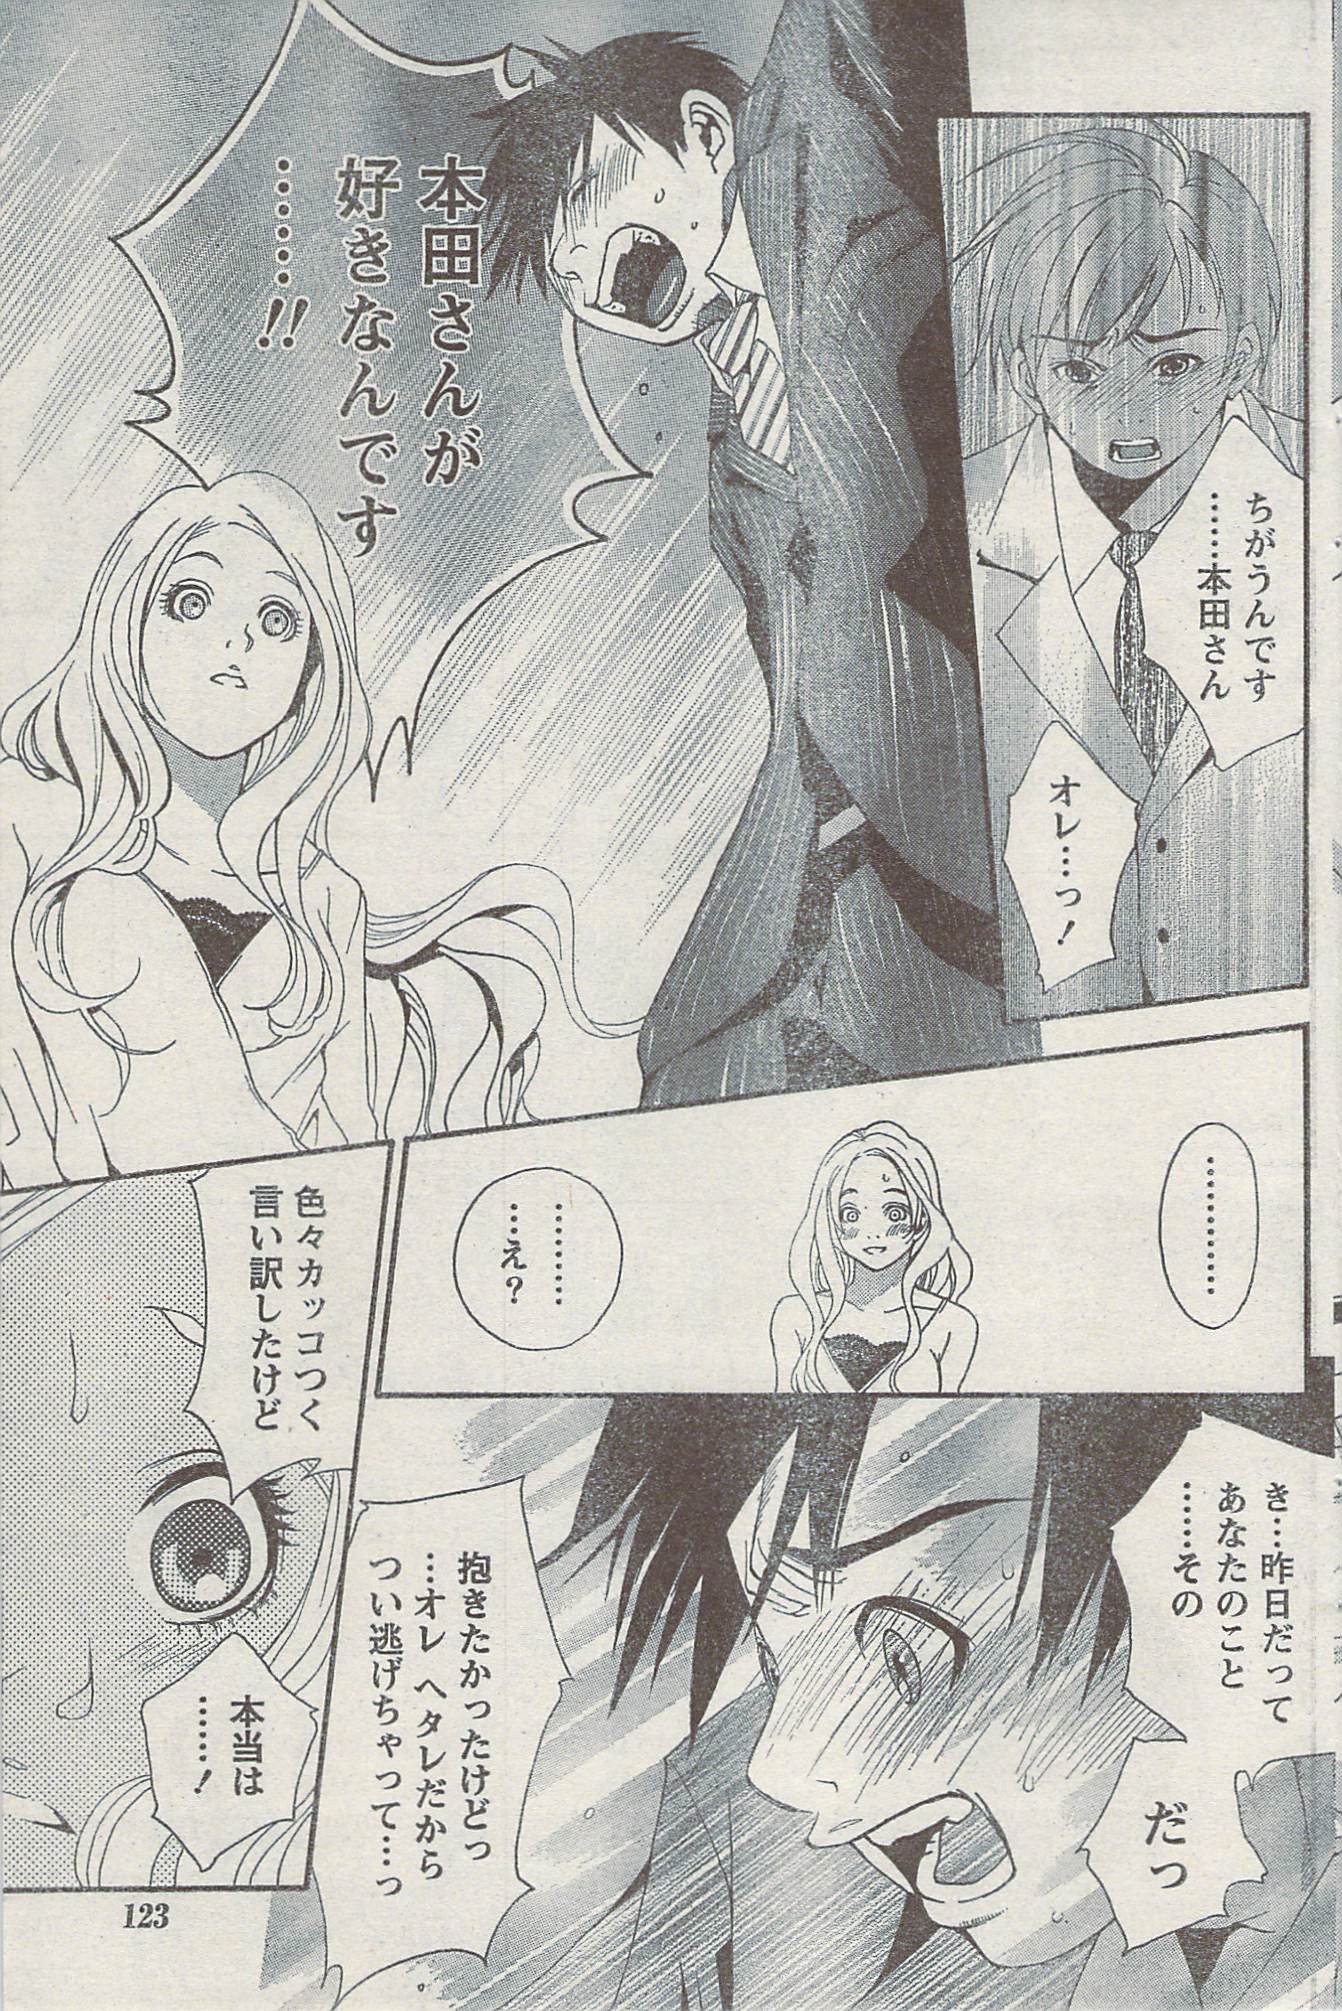 Akabane and Kimi-chan hentai manga picture 123